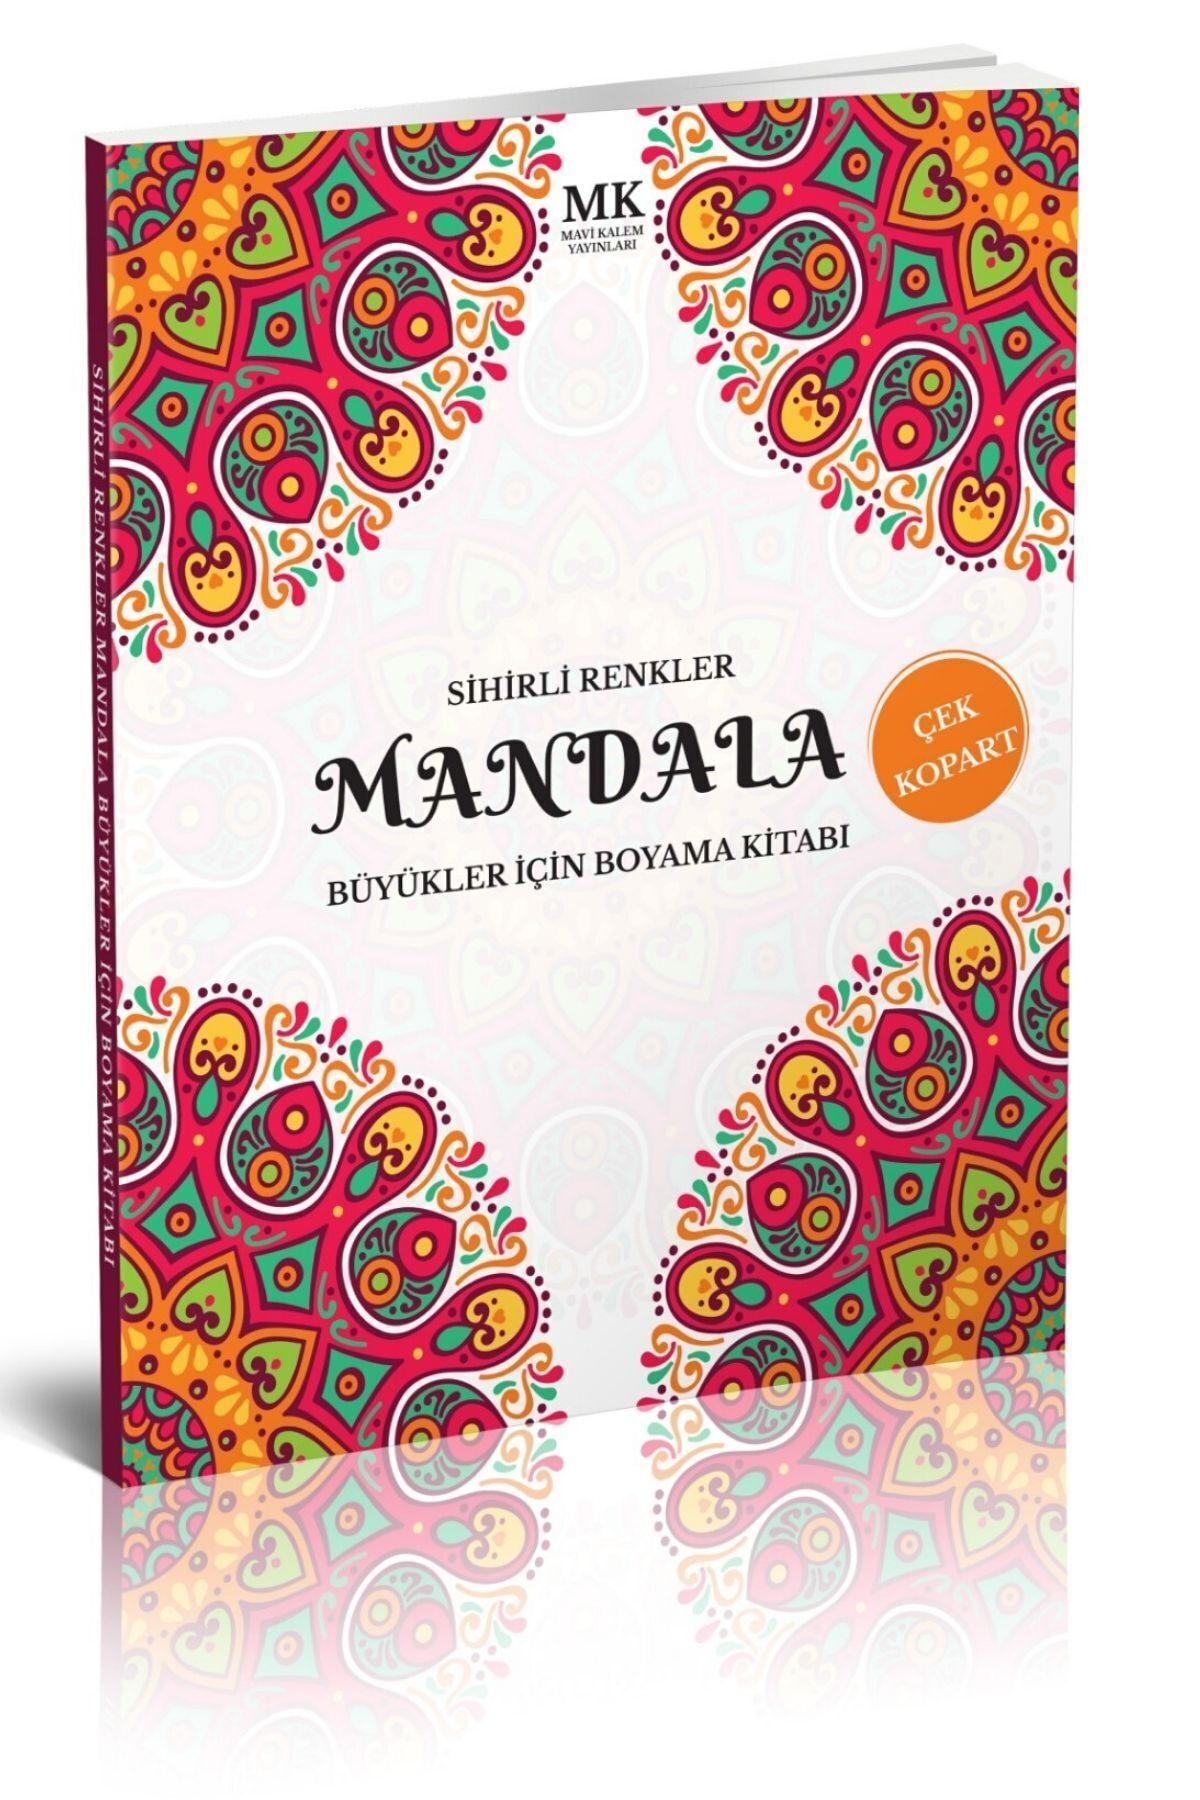 MK Mavi Kalem Yayınları Mandala Sihirli Renkler Büyükler Için Boyama Kitabı